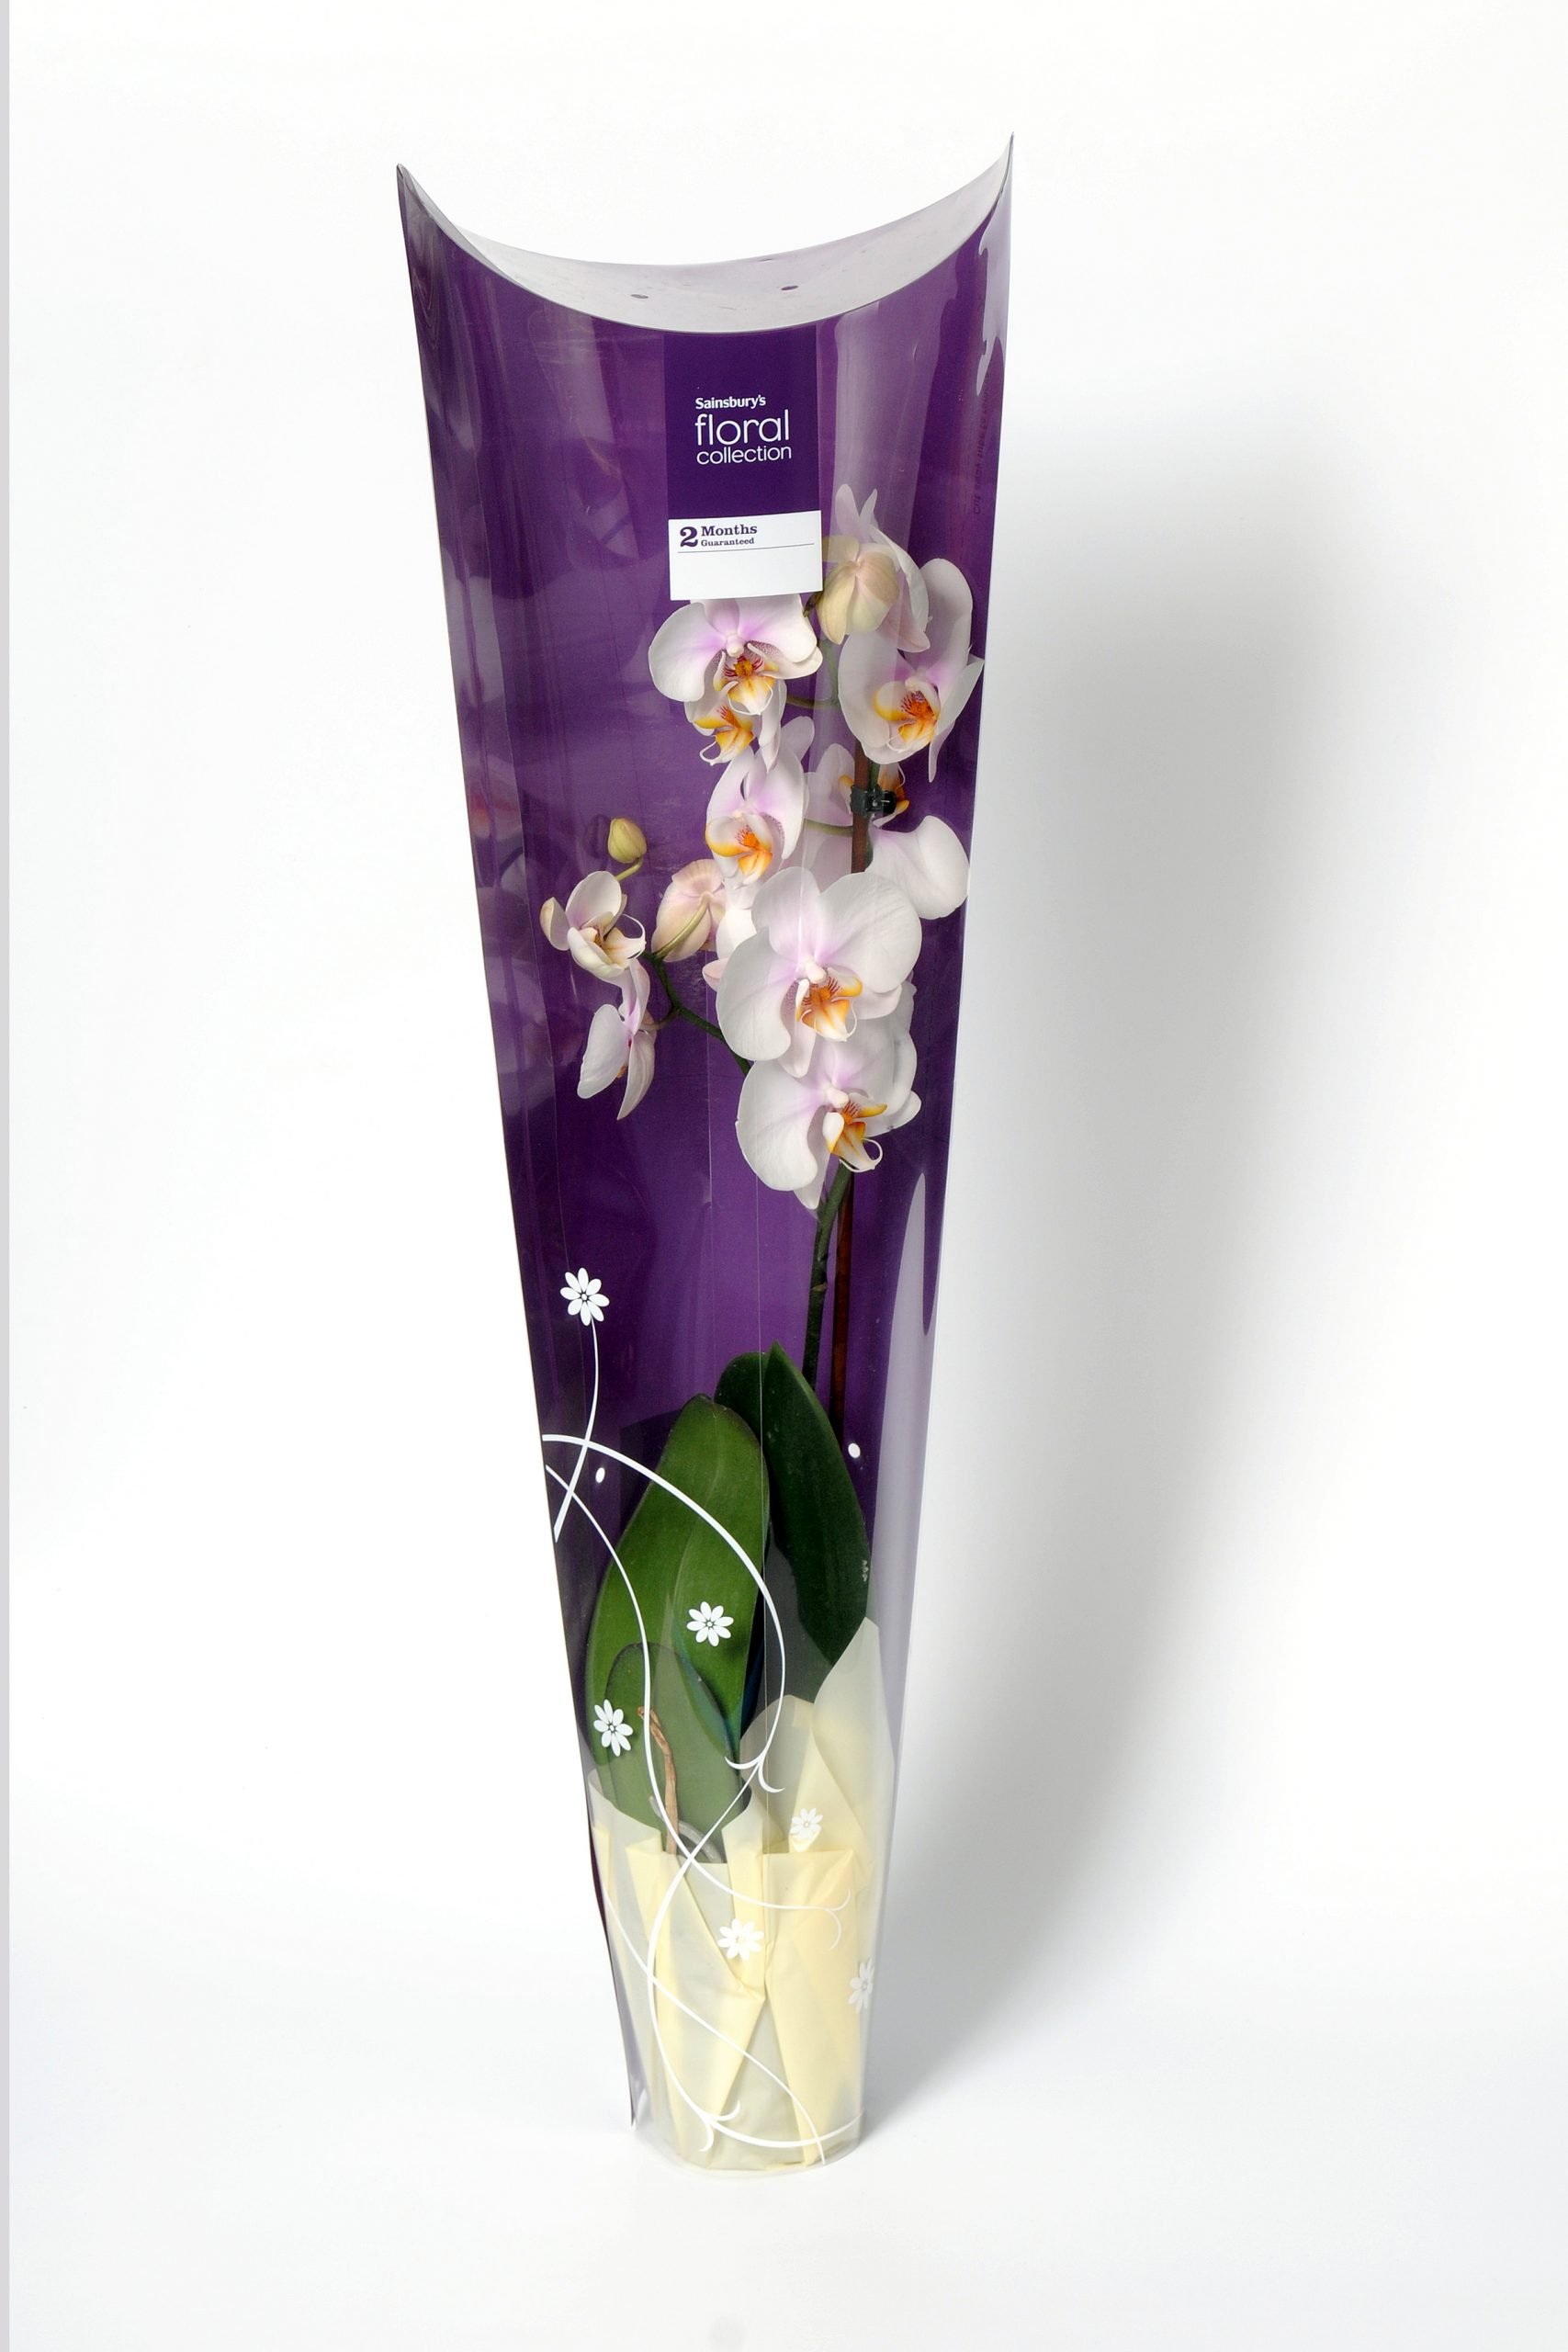 sainsburys custom plastic box for gift flowers